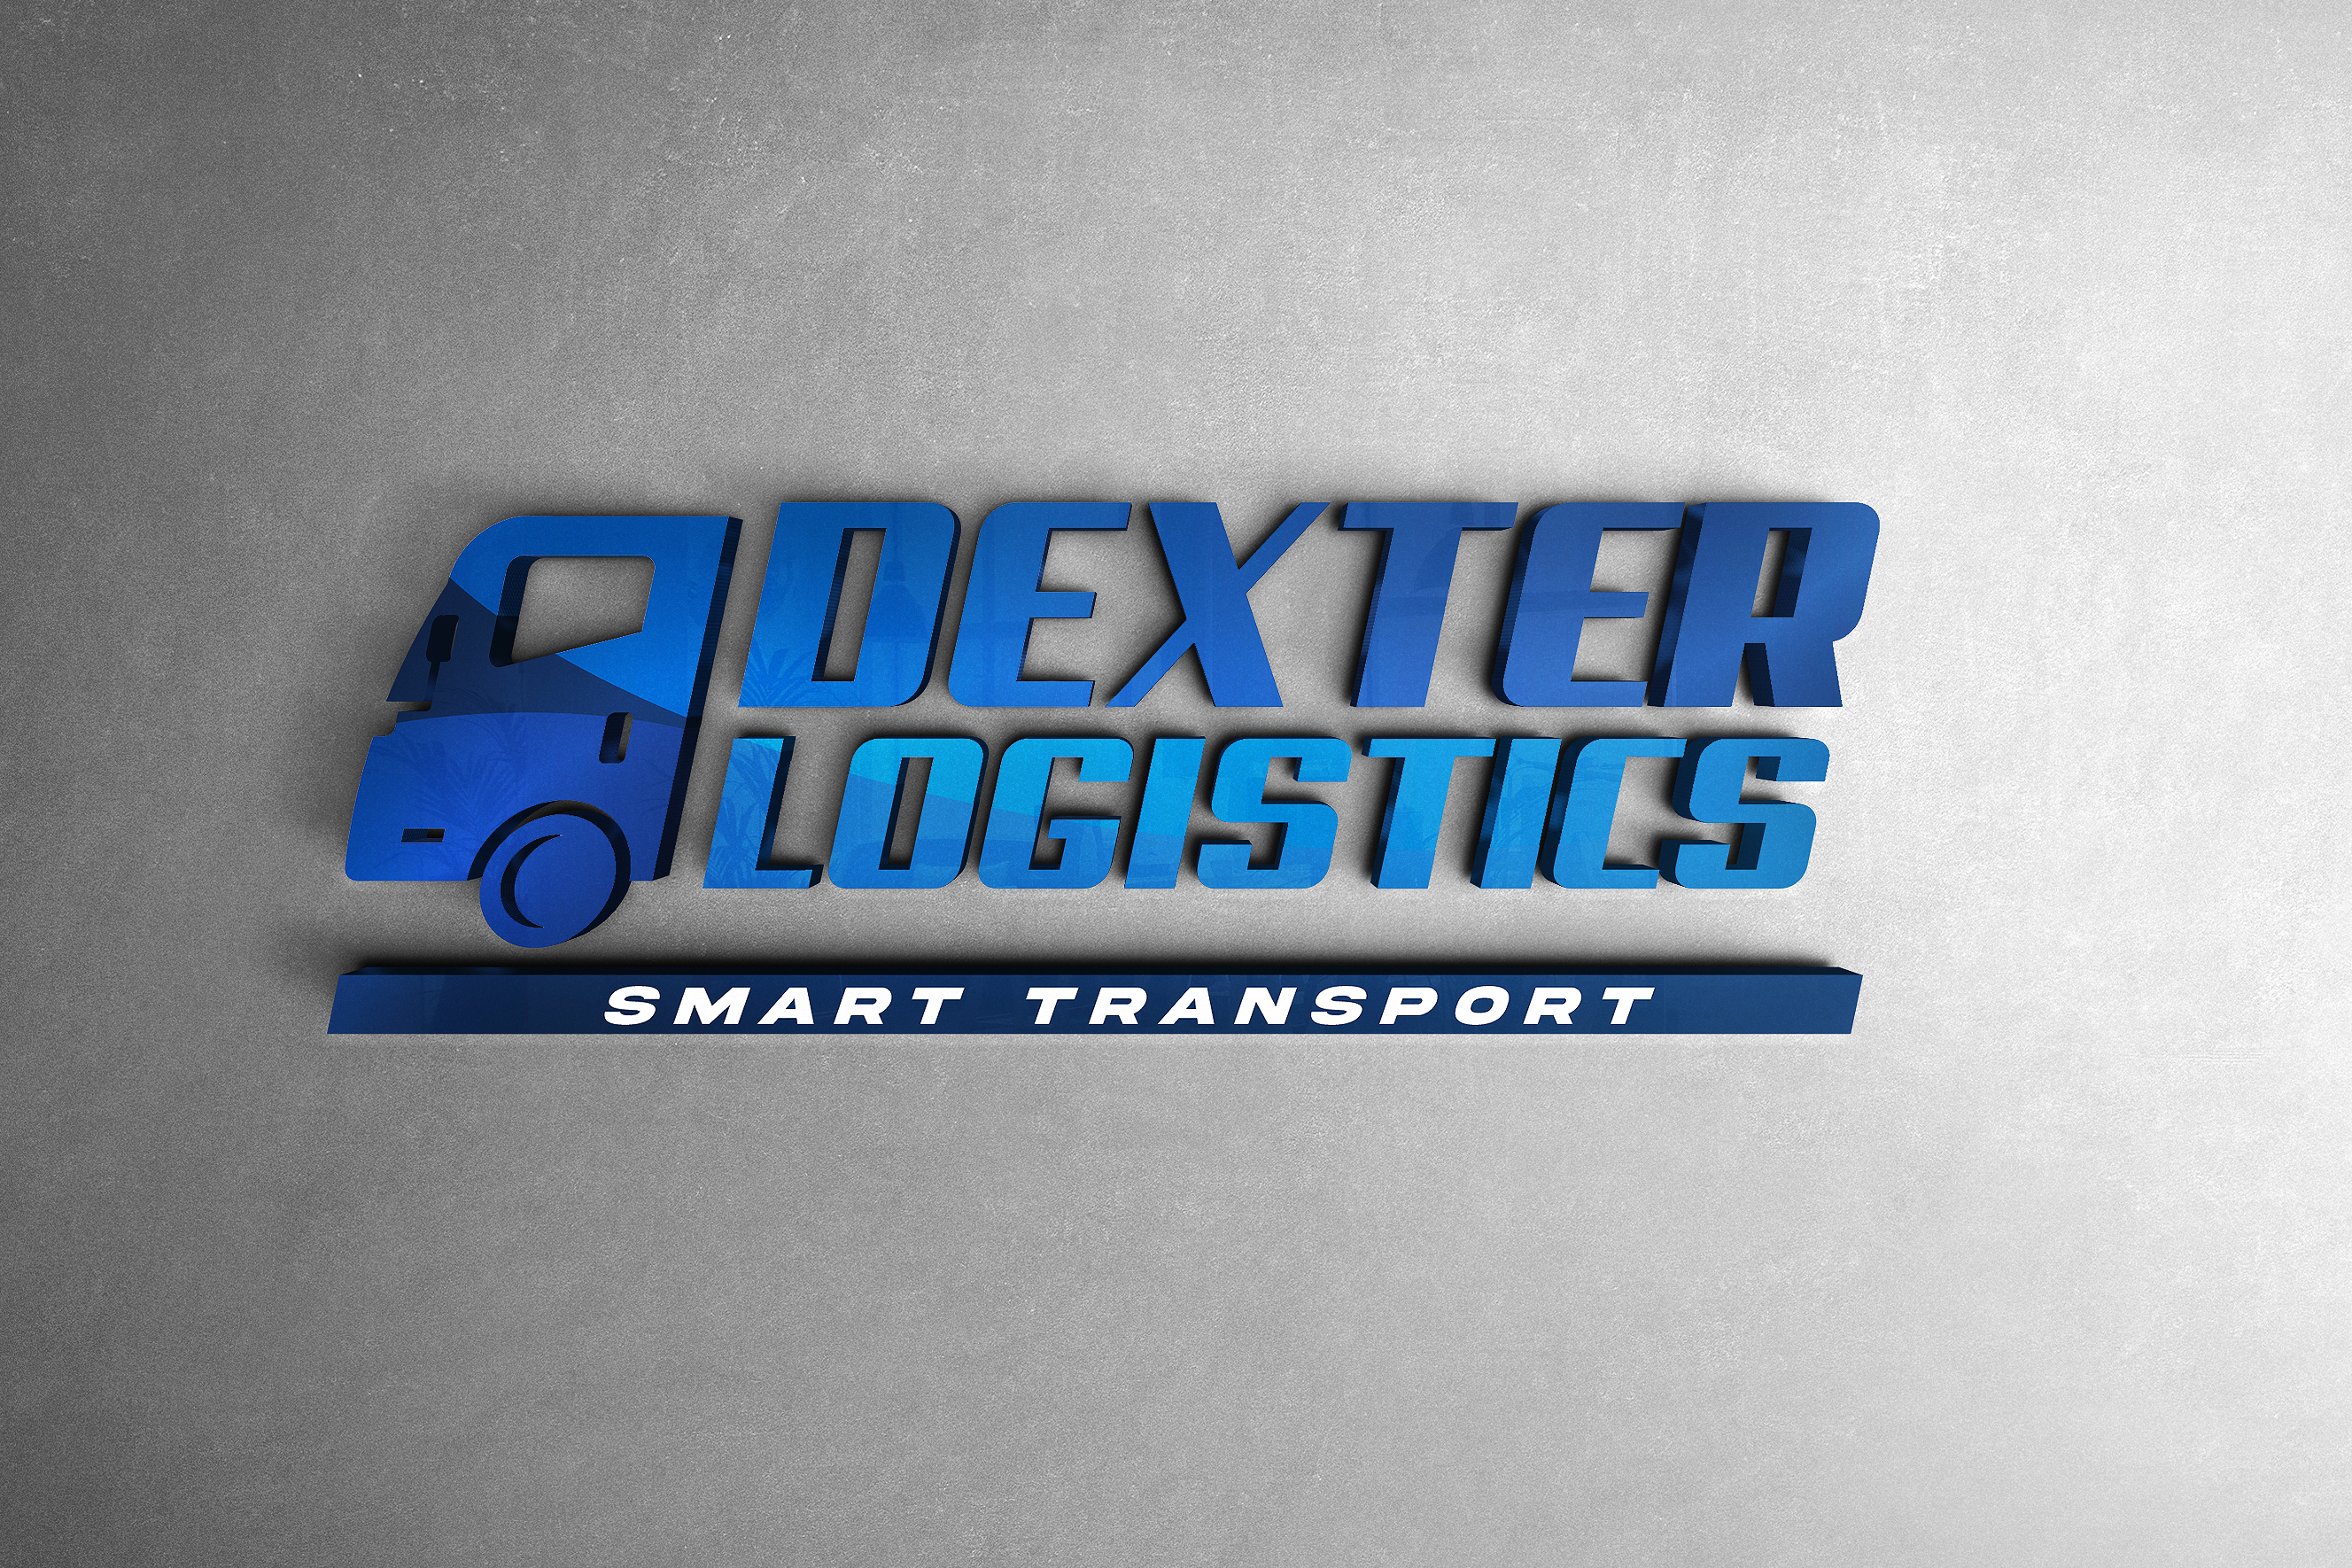 Dexter Logistics